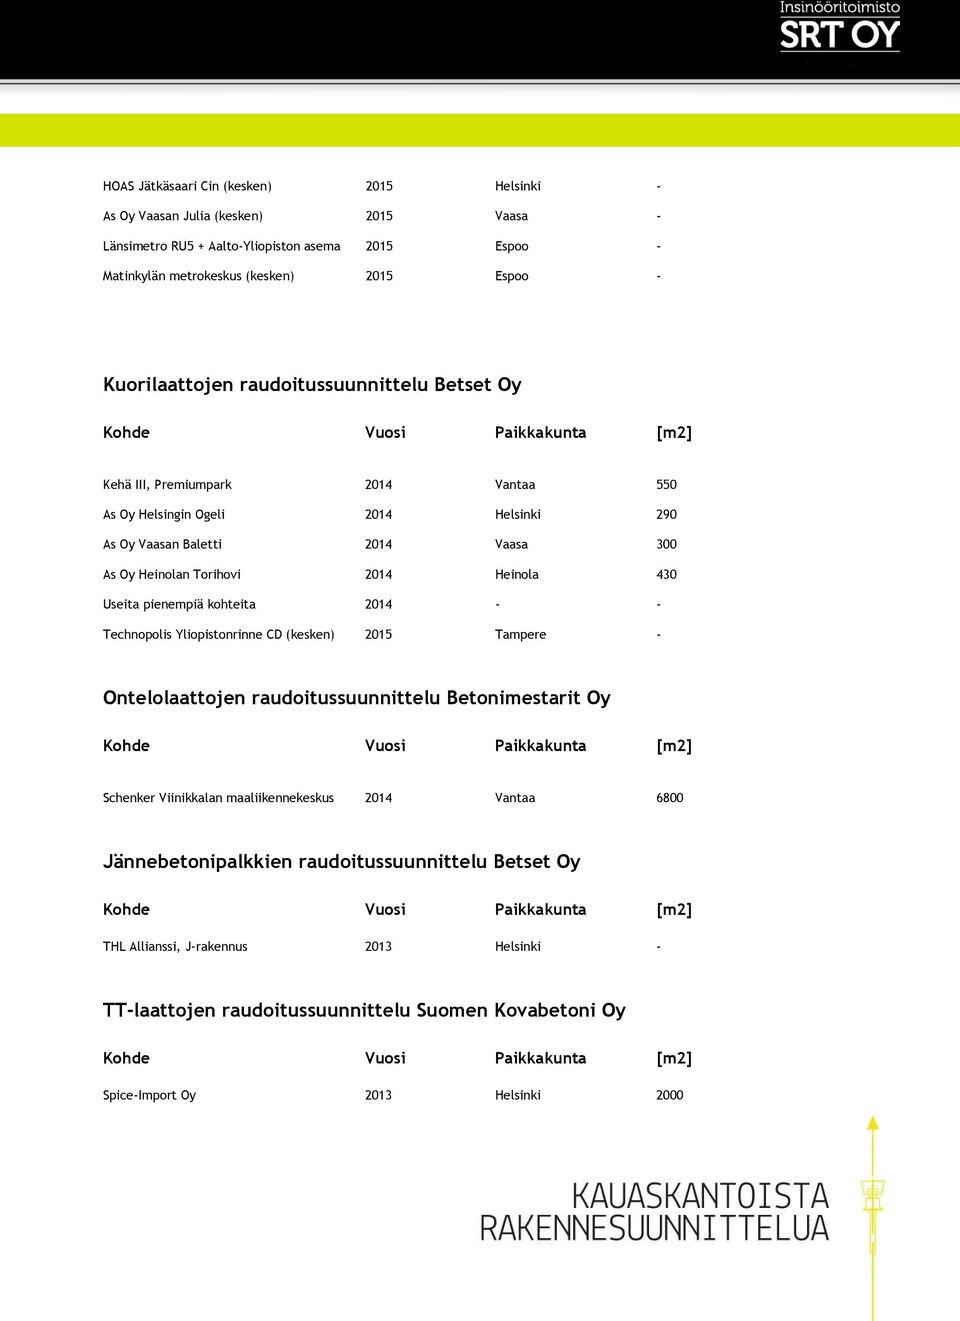 Heinola 430 Useita pienempiä kohteita 2014 - - Technopolis Yliopistonrinne CD (kesken) 2015 Tampere - Ontelolaattojen raudoitussuunnittelu Betonimestarit Oy Schenker Viinikkalan